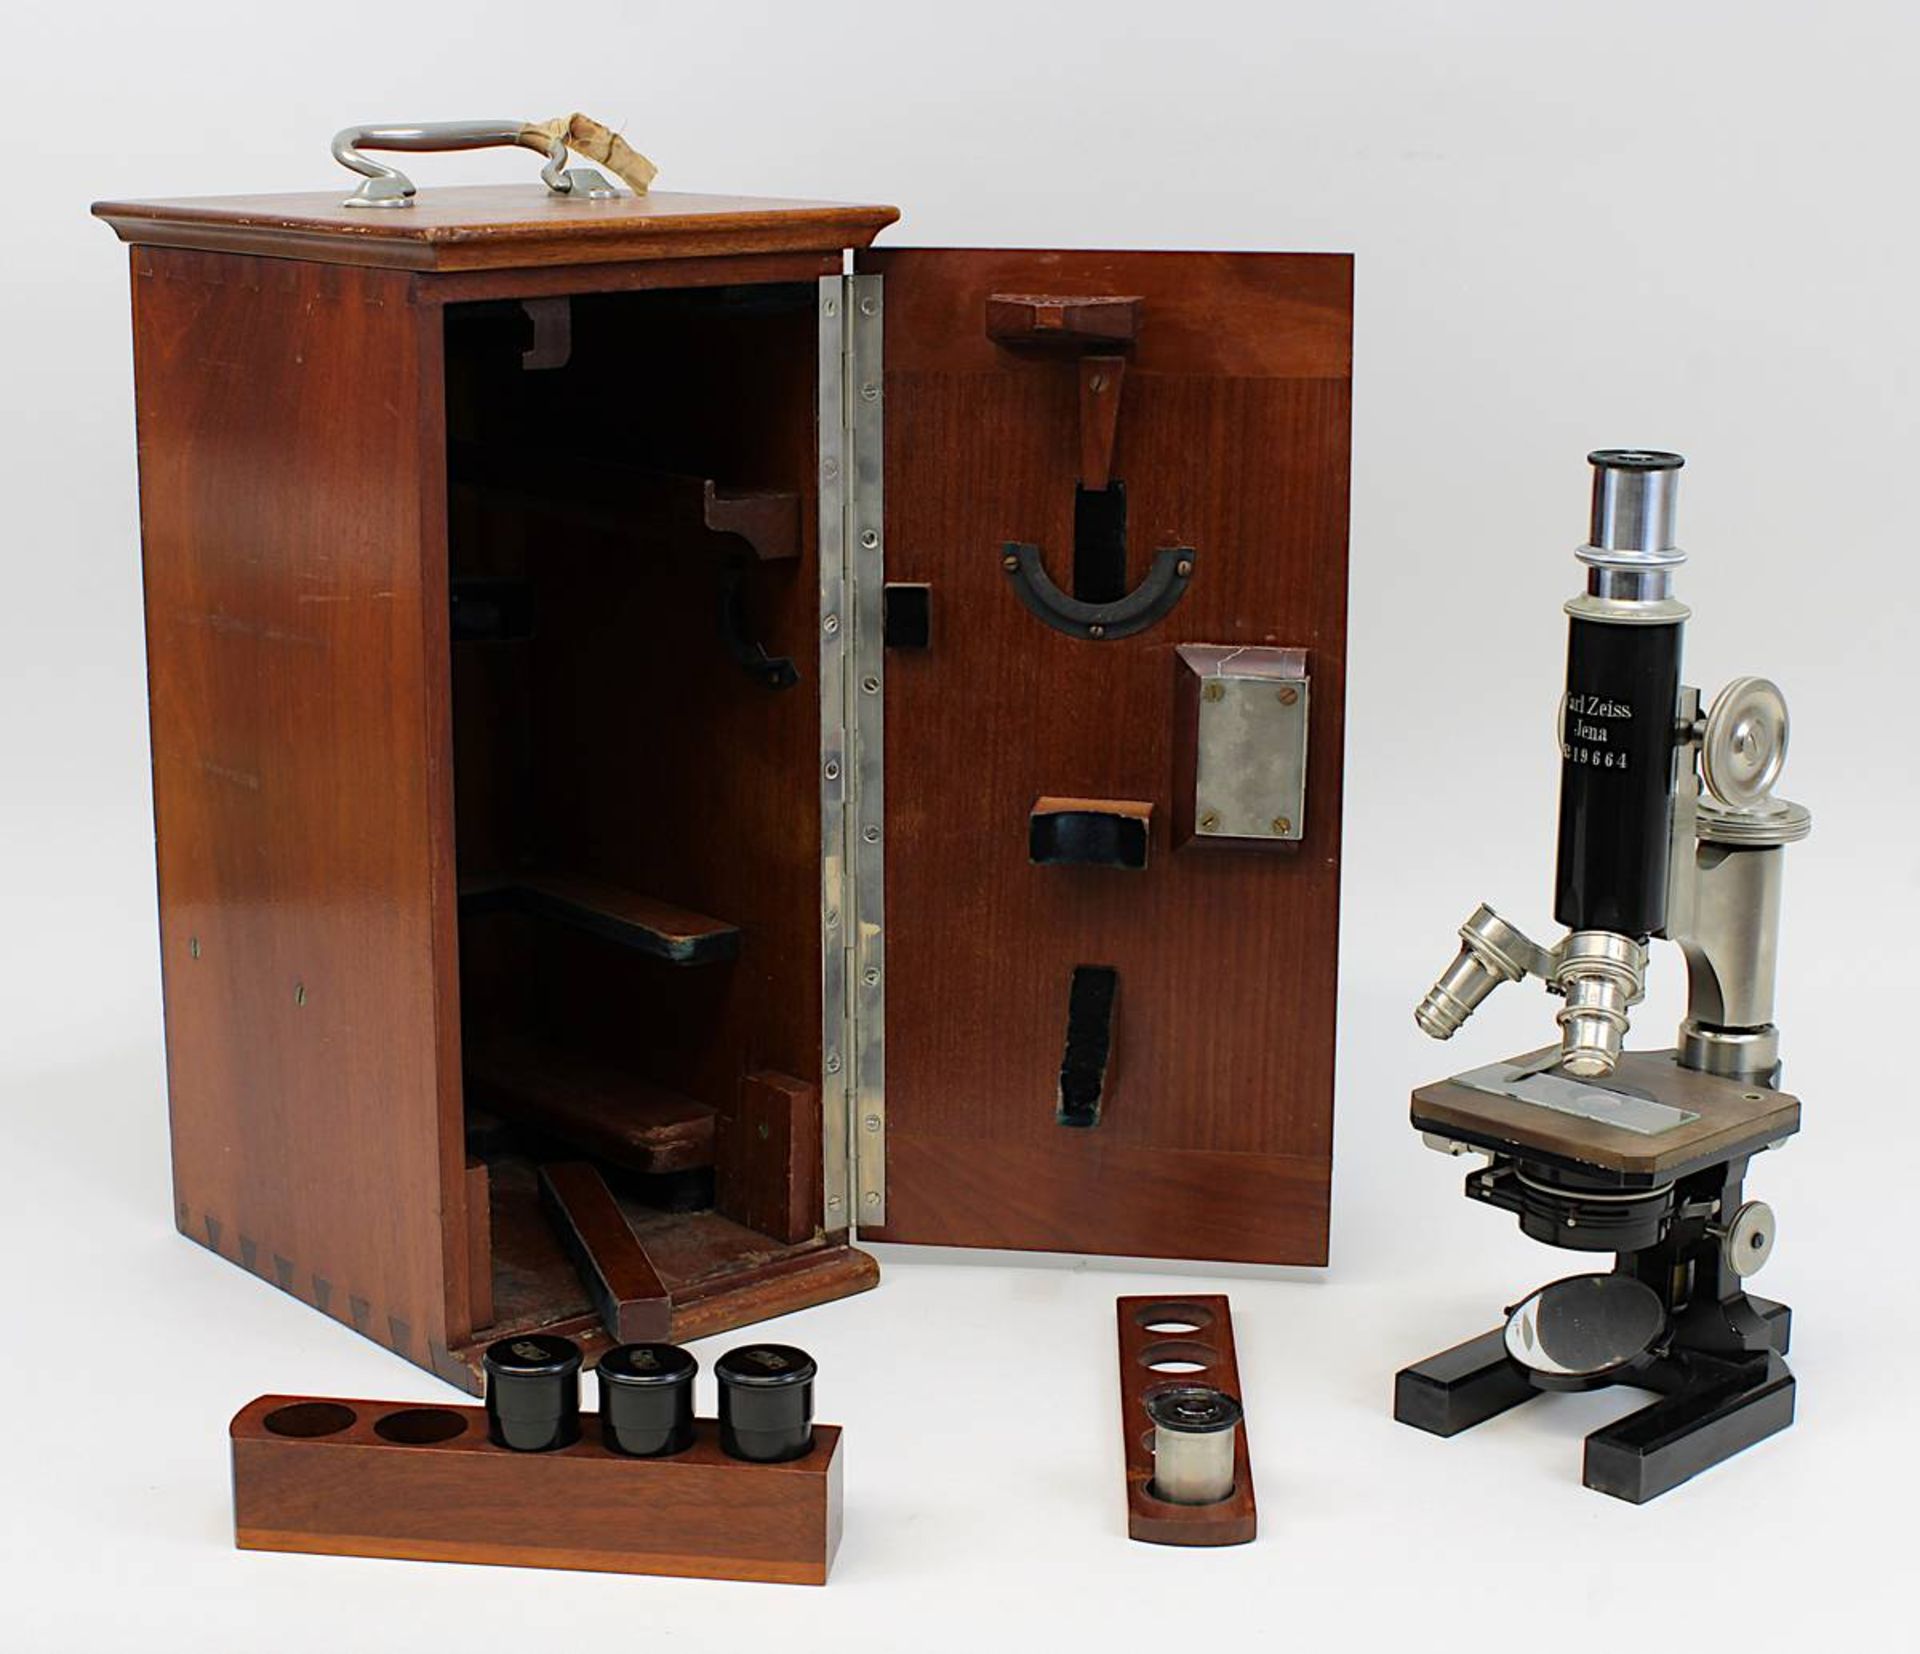 Mikroskop Carl Zeiss Jena, Anf. 20.Jh., Messing geschwärzt und vernickeltes Metall, mit drehbaren